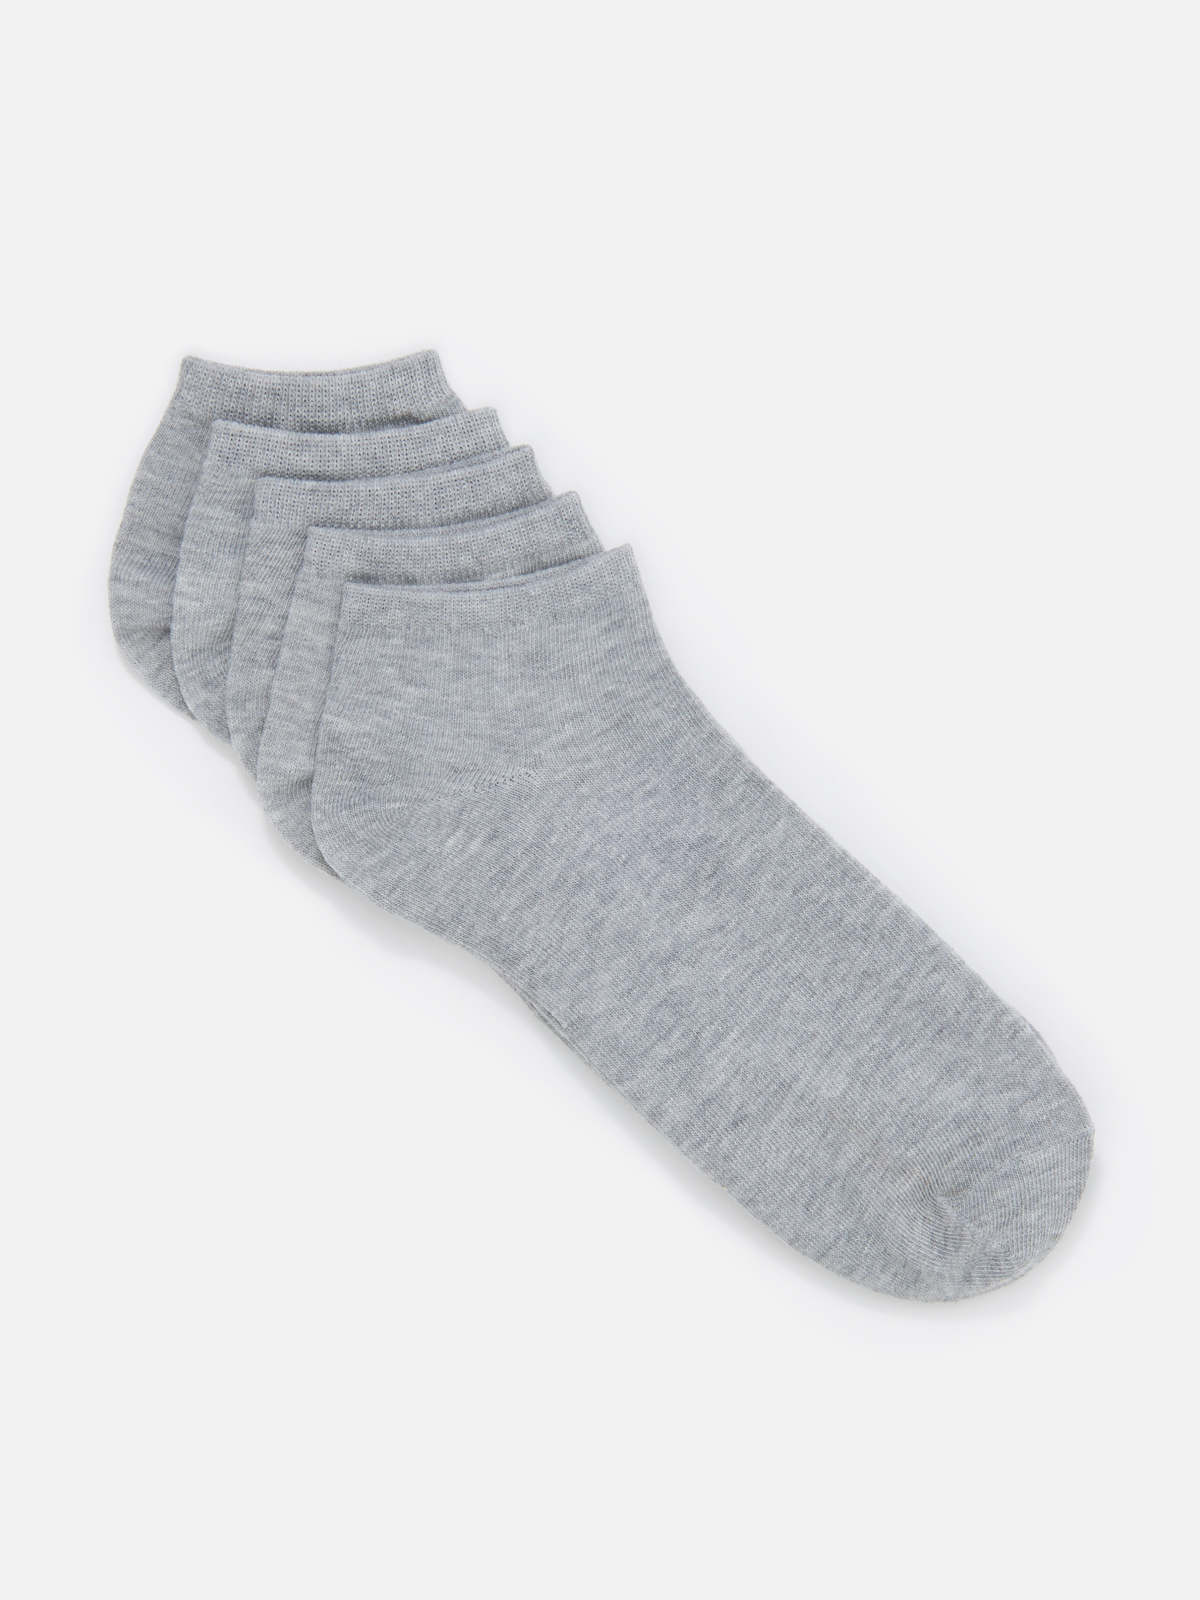 Комплект носков мужских Cotton & Quality 51001Т5 серых 40-43